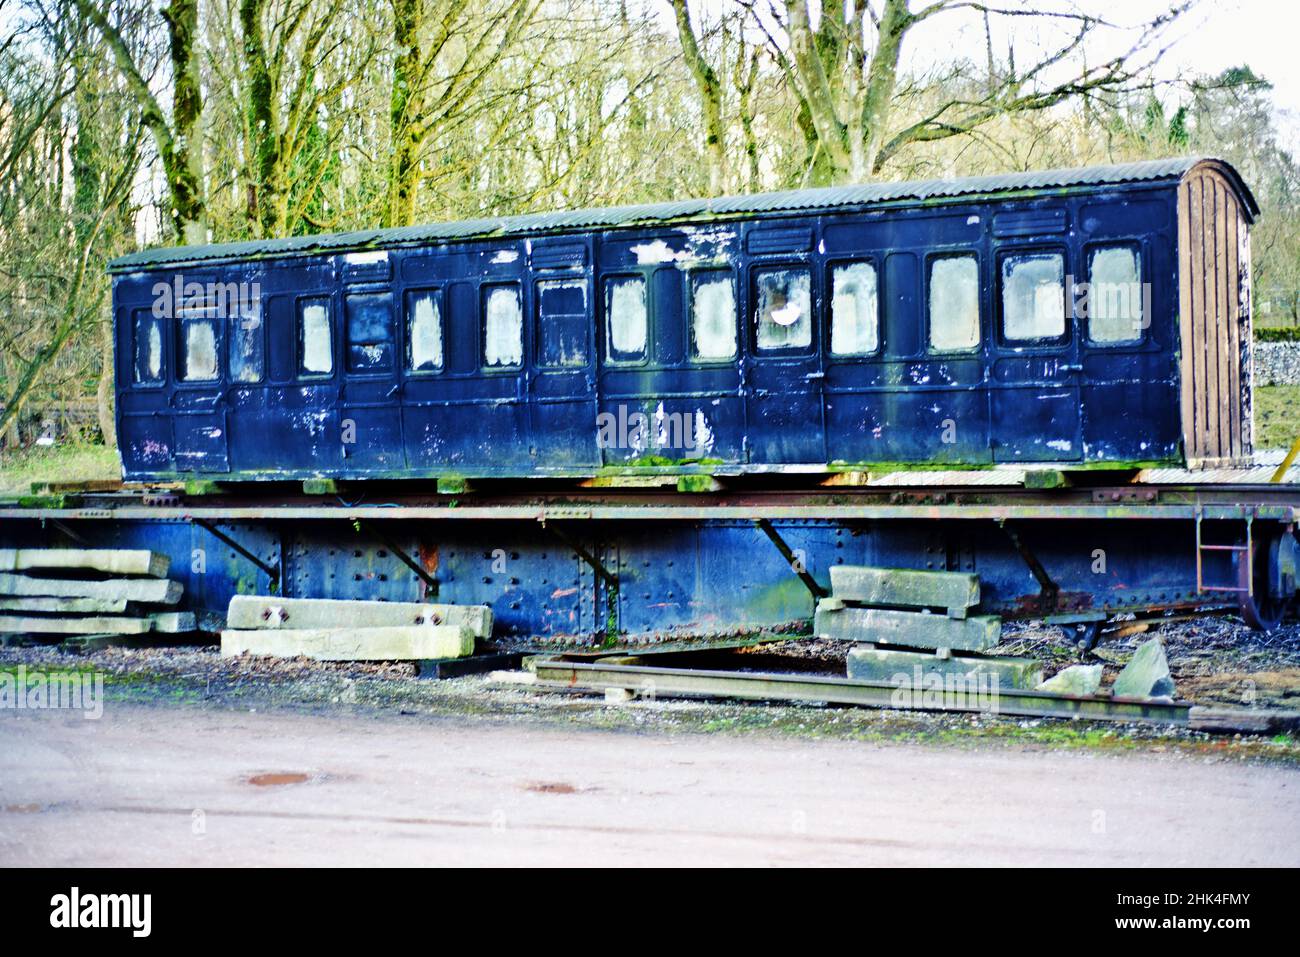 Entrenador vintage esperando restauración, línea Stainmore, Kirkby Syehen West, Cumbria, Inglaterra Foto de stock